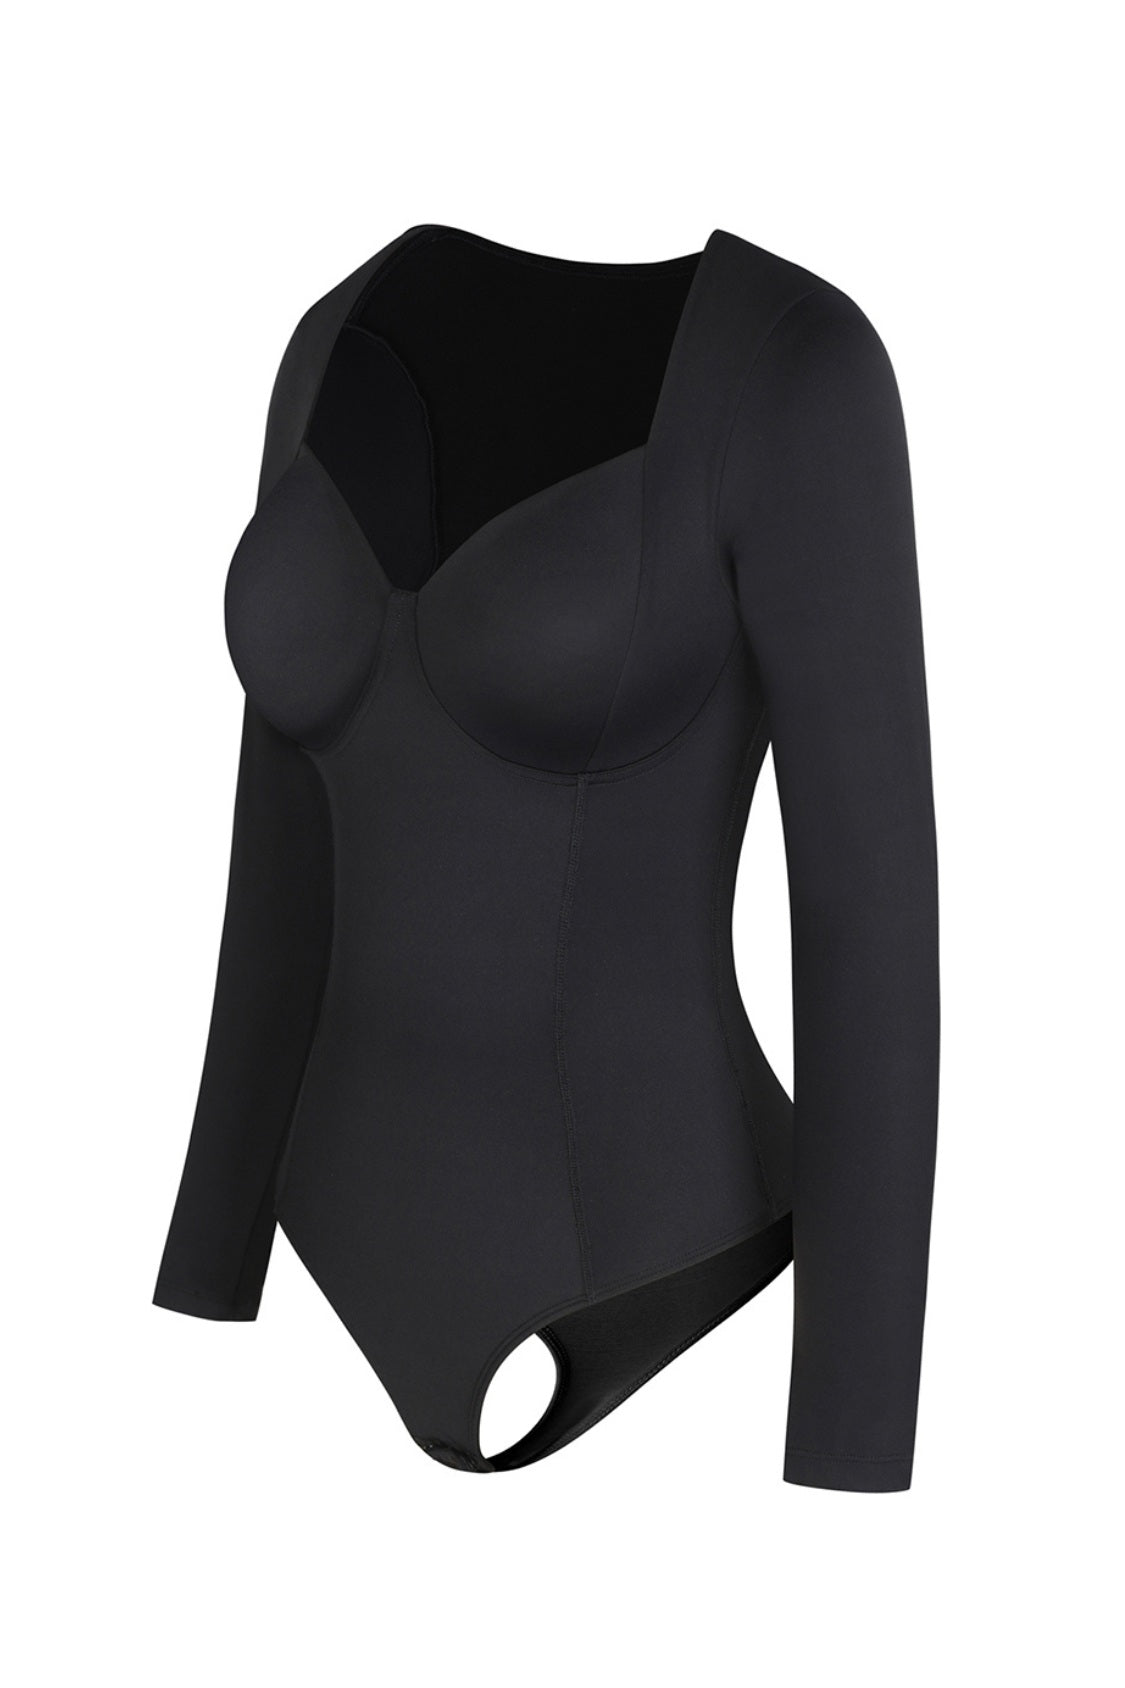 Tiffany Shaping Bodysuit - Black Contour Clothing